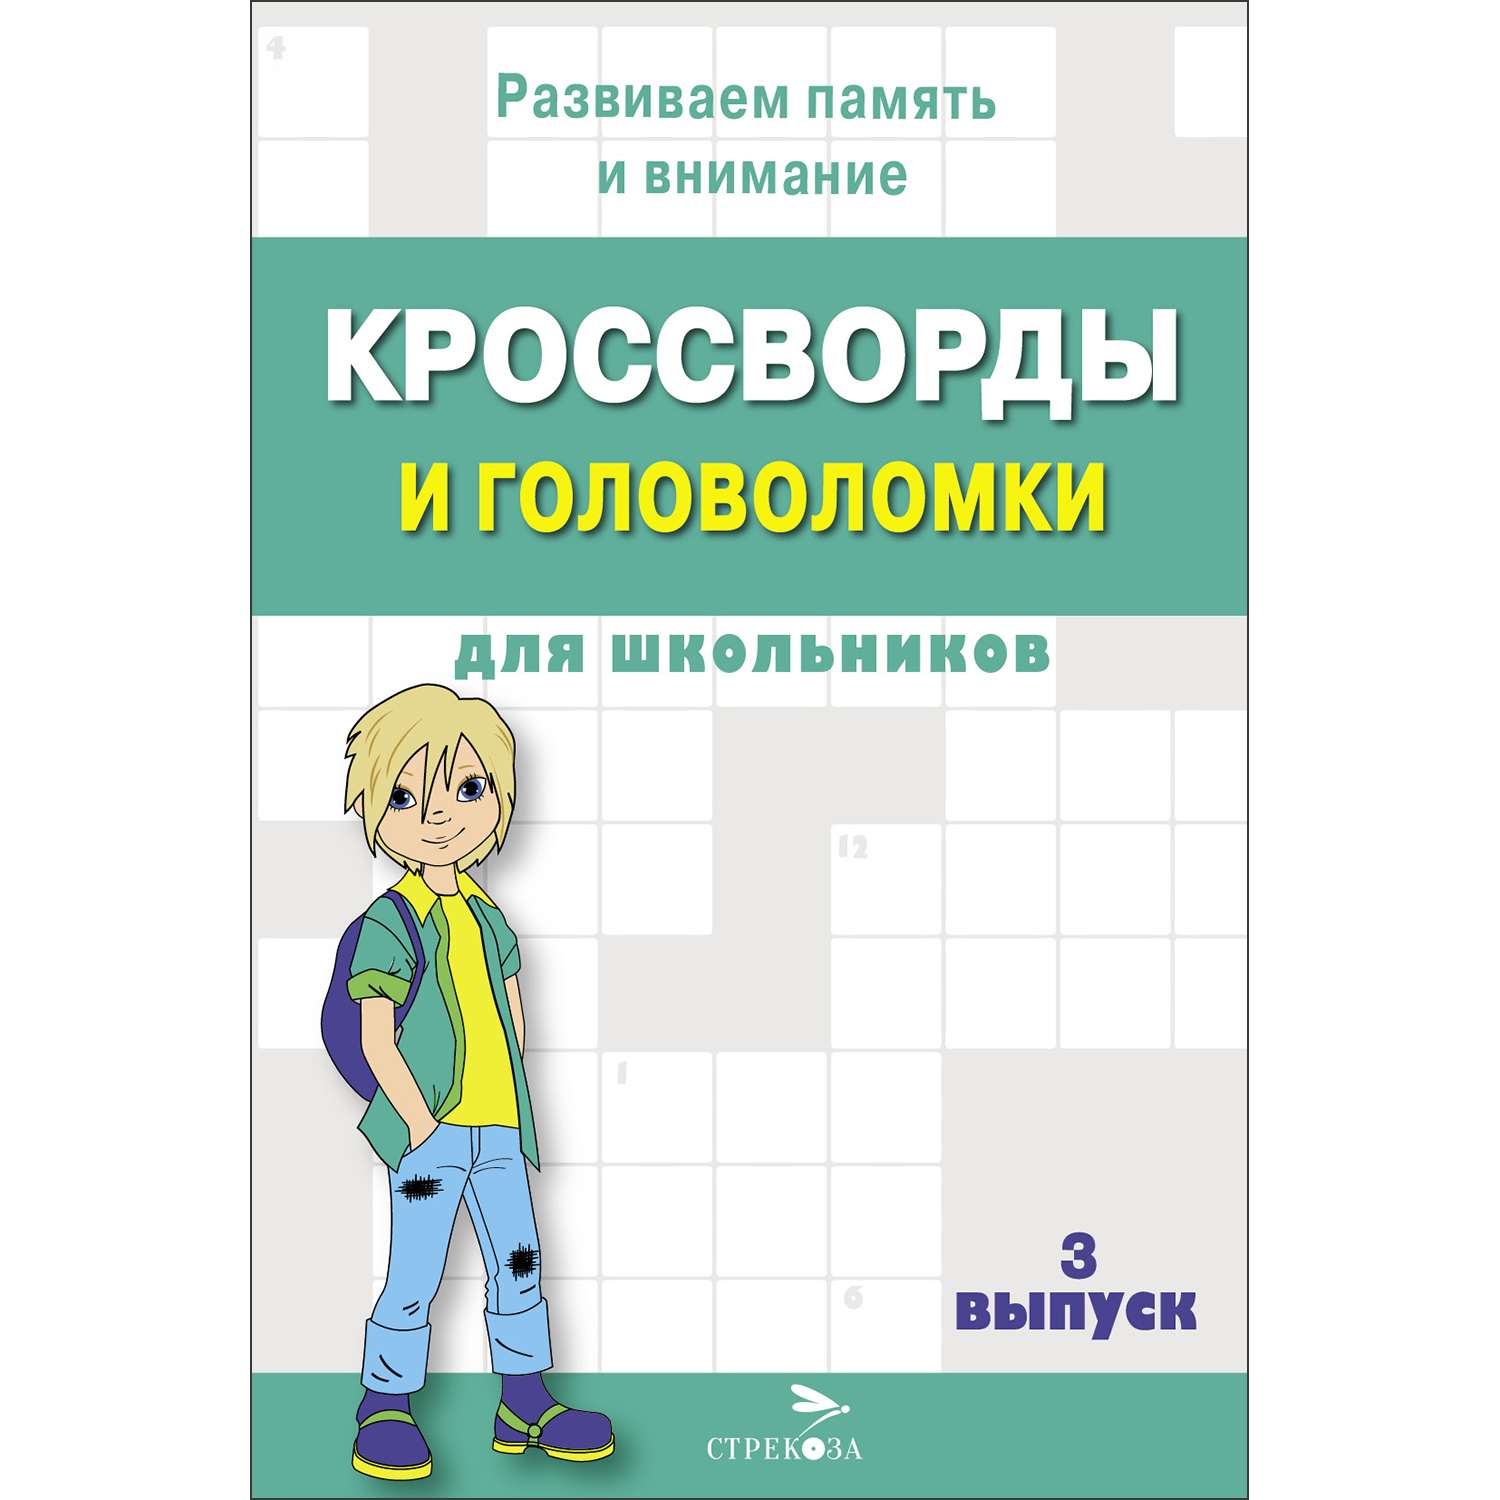 Книга Кроссворды и головоломки для школьников Выпуск 3 - фото 1